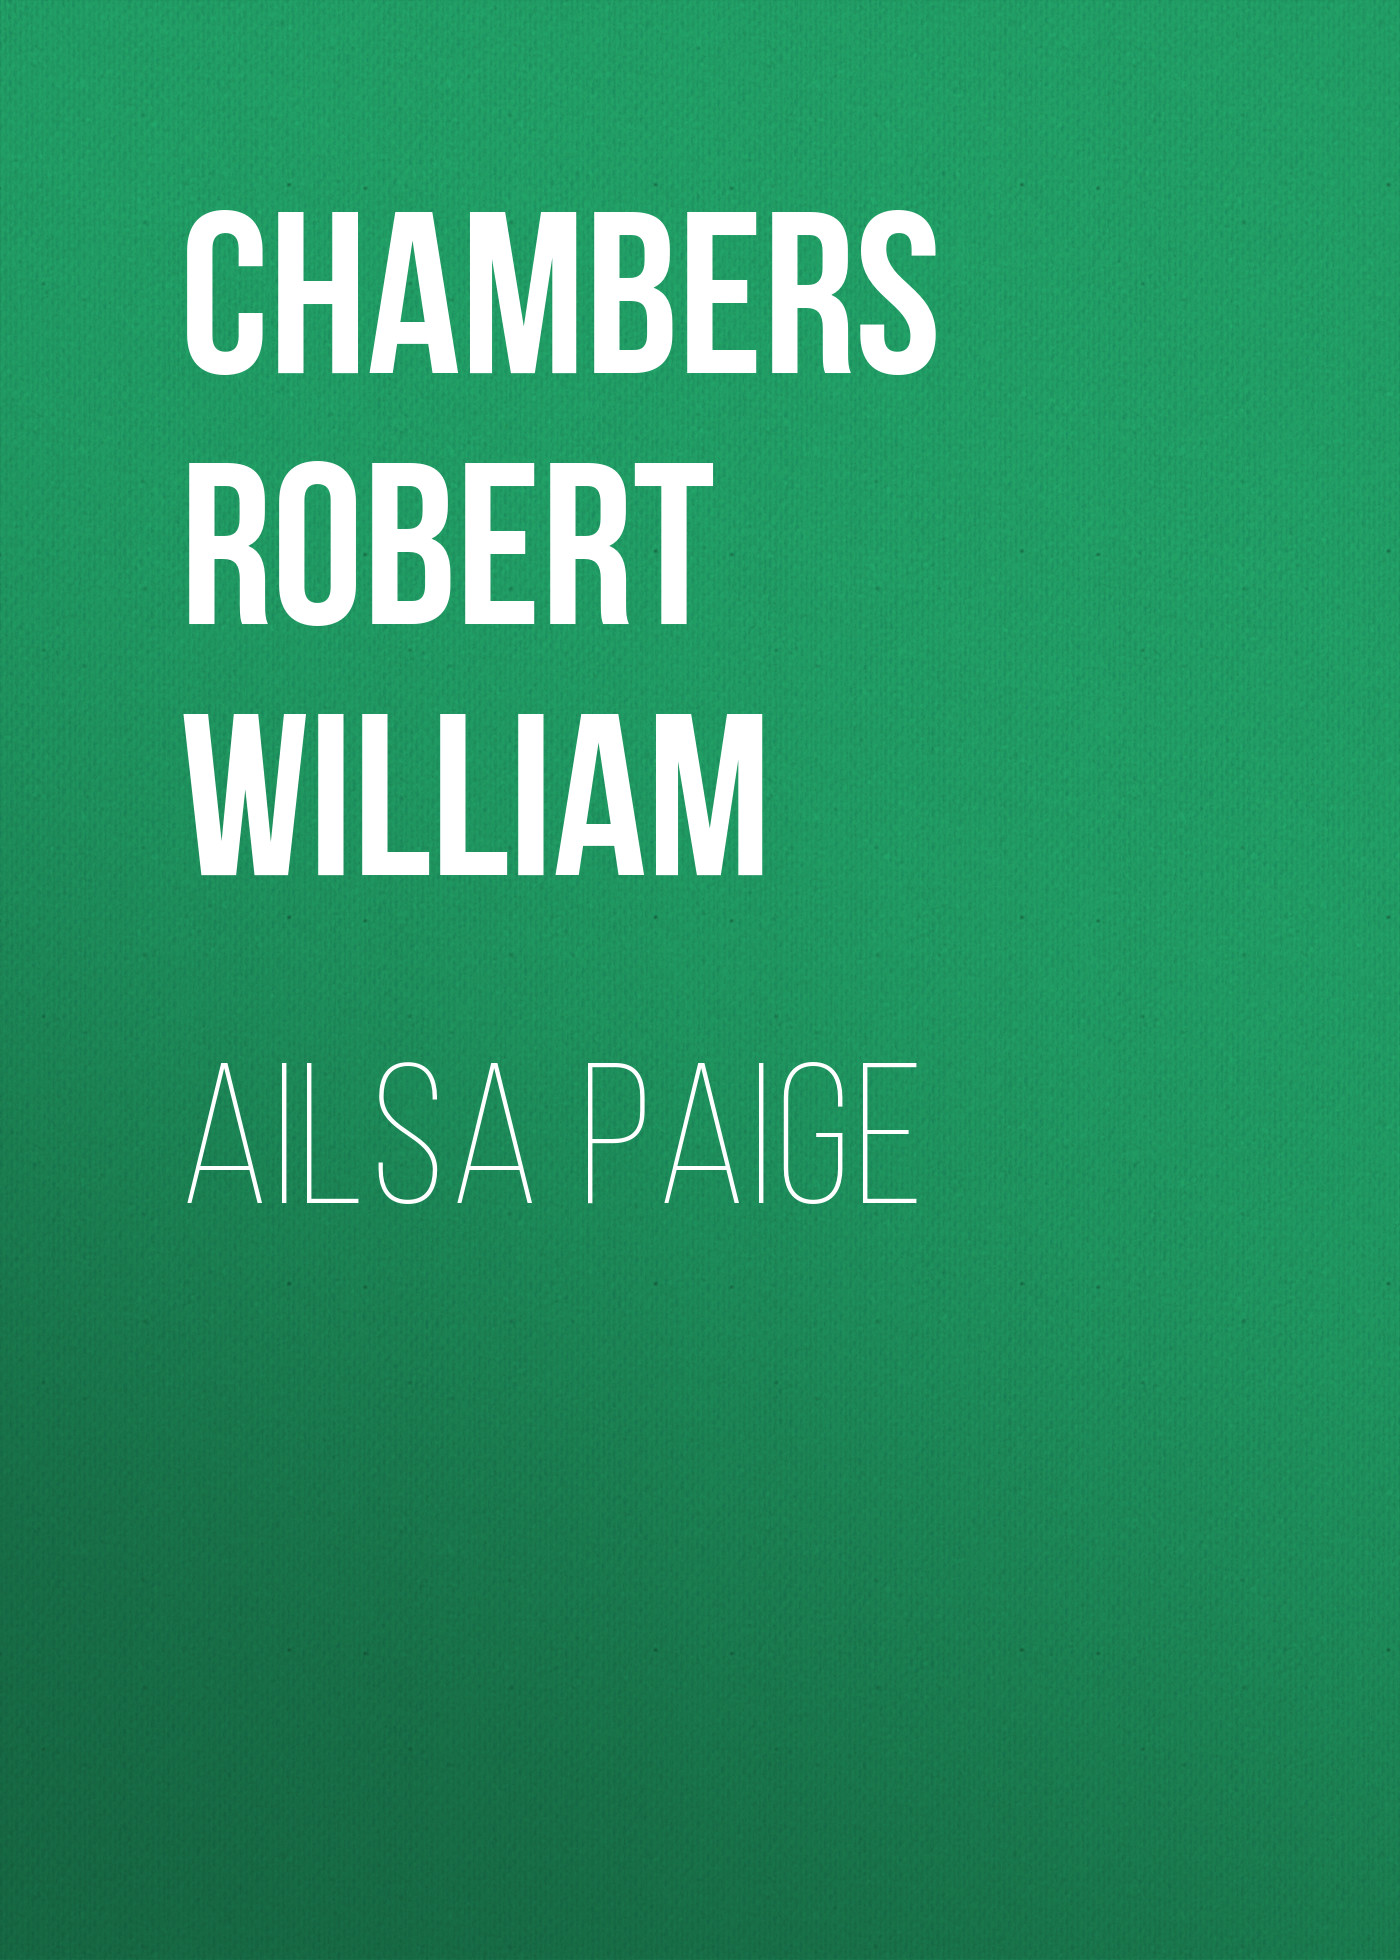 Книга Ailsa Paige из серии , созданная Robert Chambers, может относится к жанру Историческая фантастика, Зарубежная старинная литература, Зарубежная классика, Исторические приключения. Стоимость электронной книги Ailsa Paige с идентификатором 36324500 составляет 0 руб.